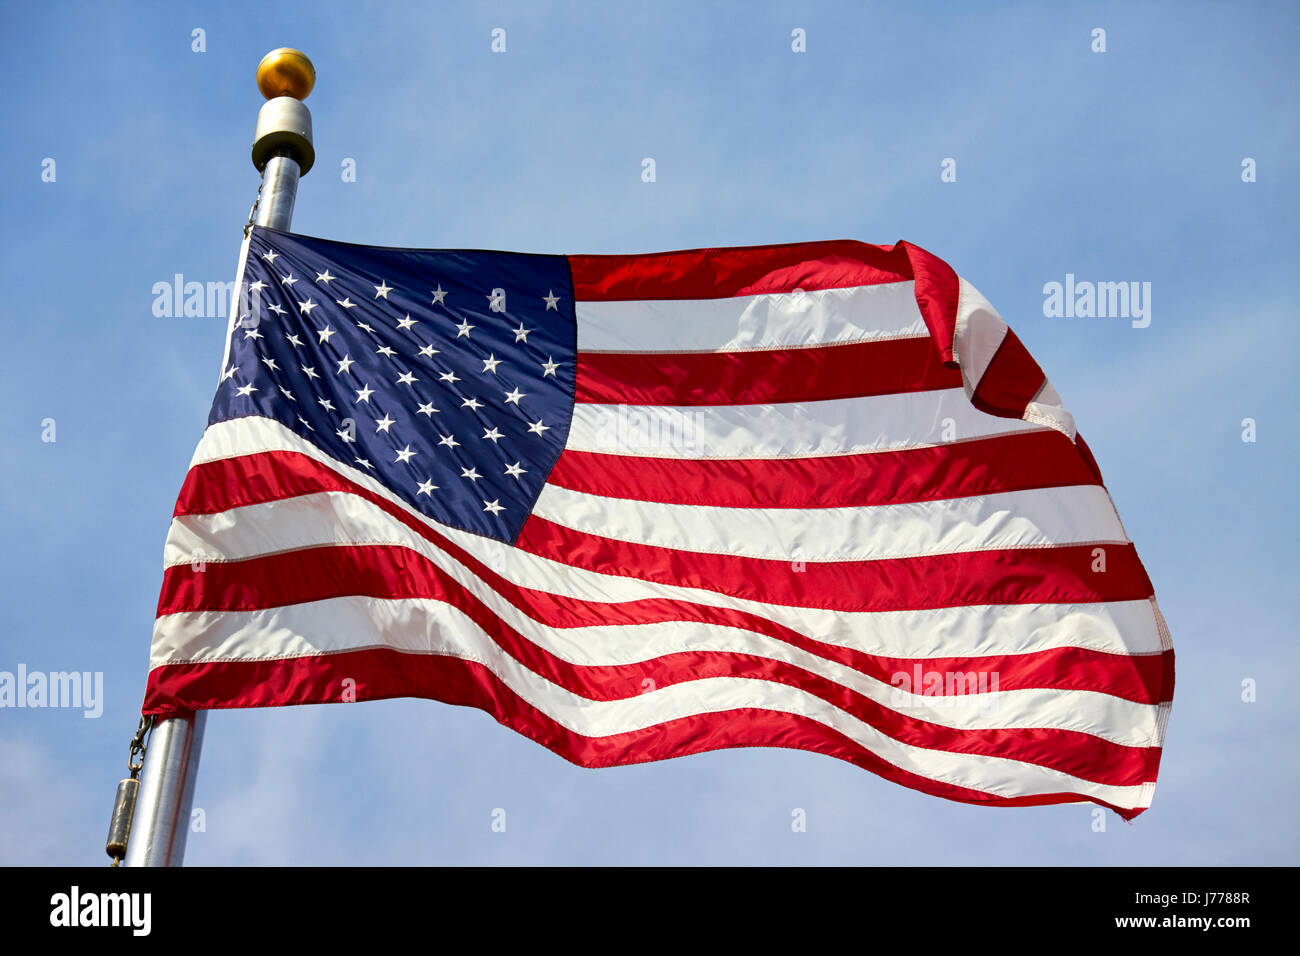 us flag flying against blue sky Washington DC USA Stock Photo